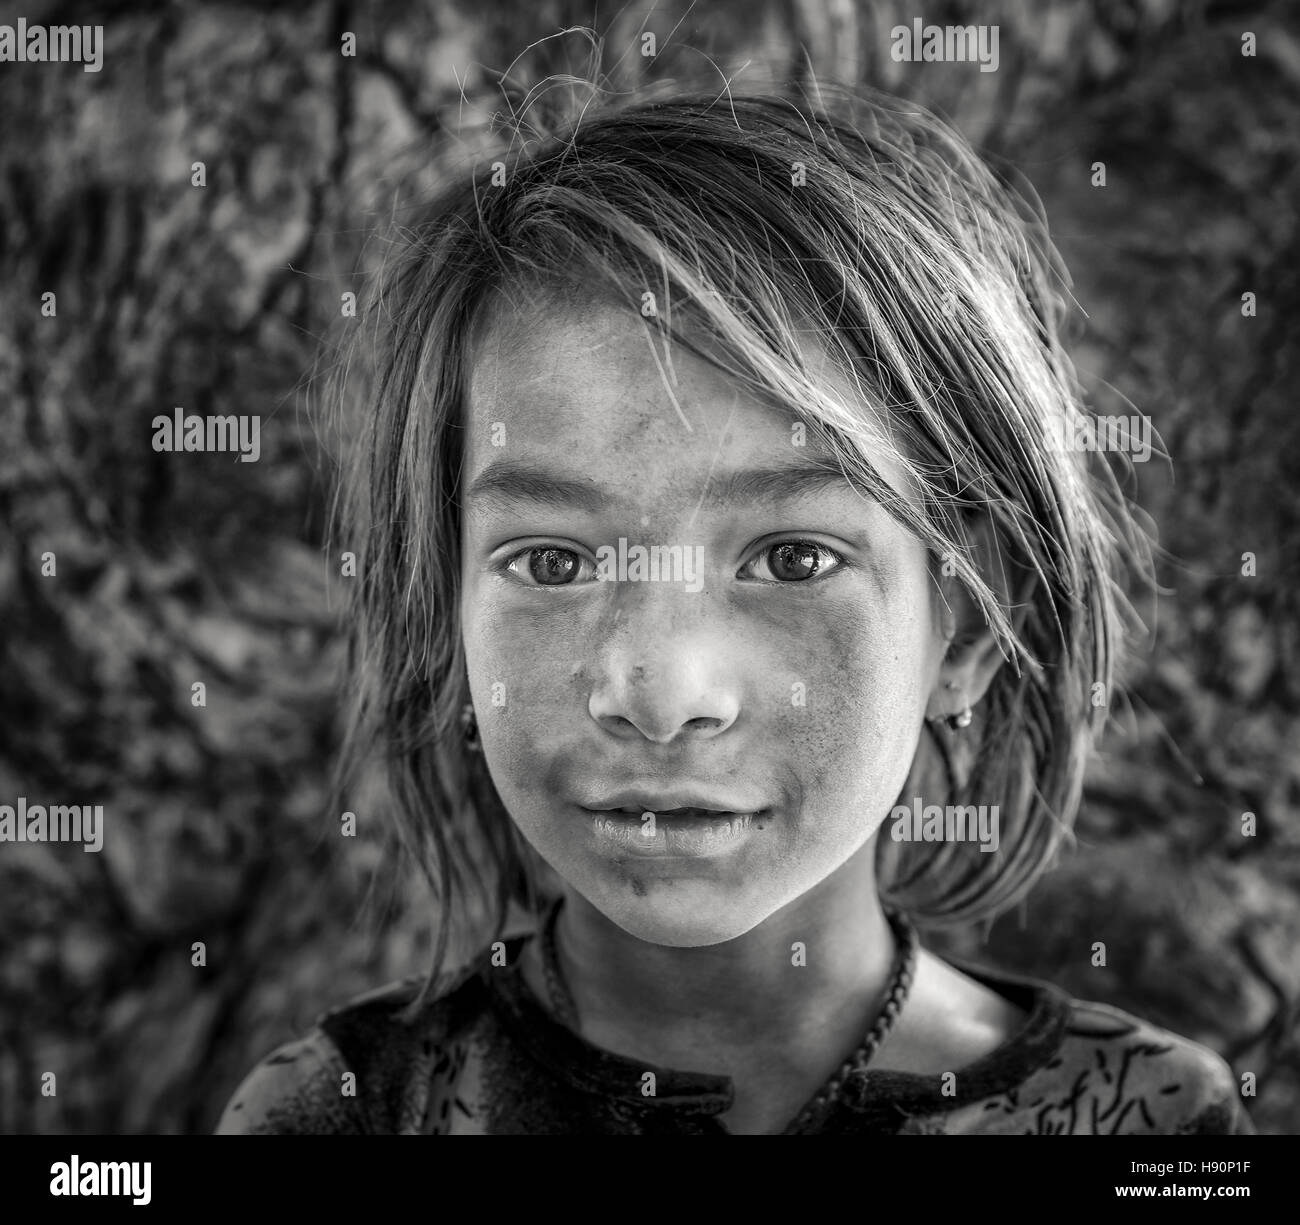 Enfant vivant dans la rue, Jodhpur, Rajasthan, India Banque D'Images